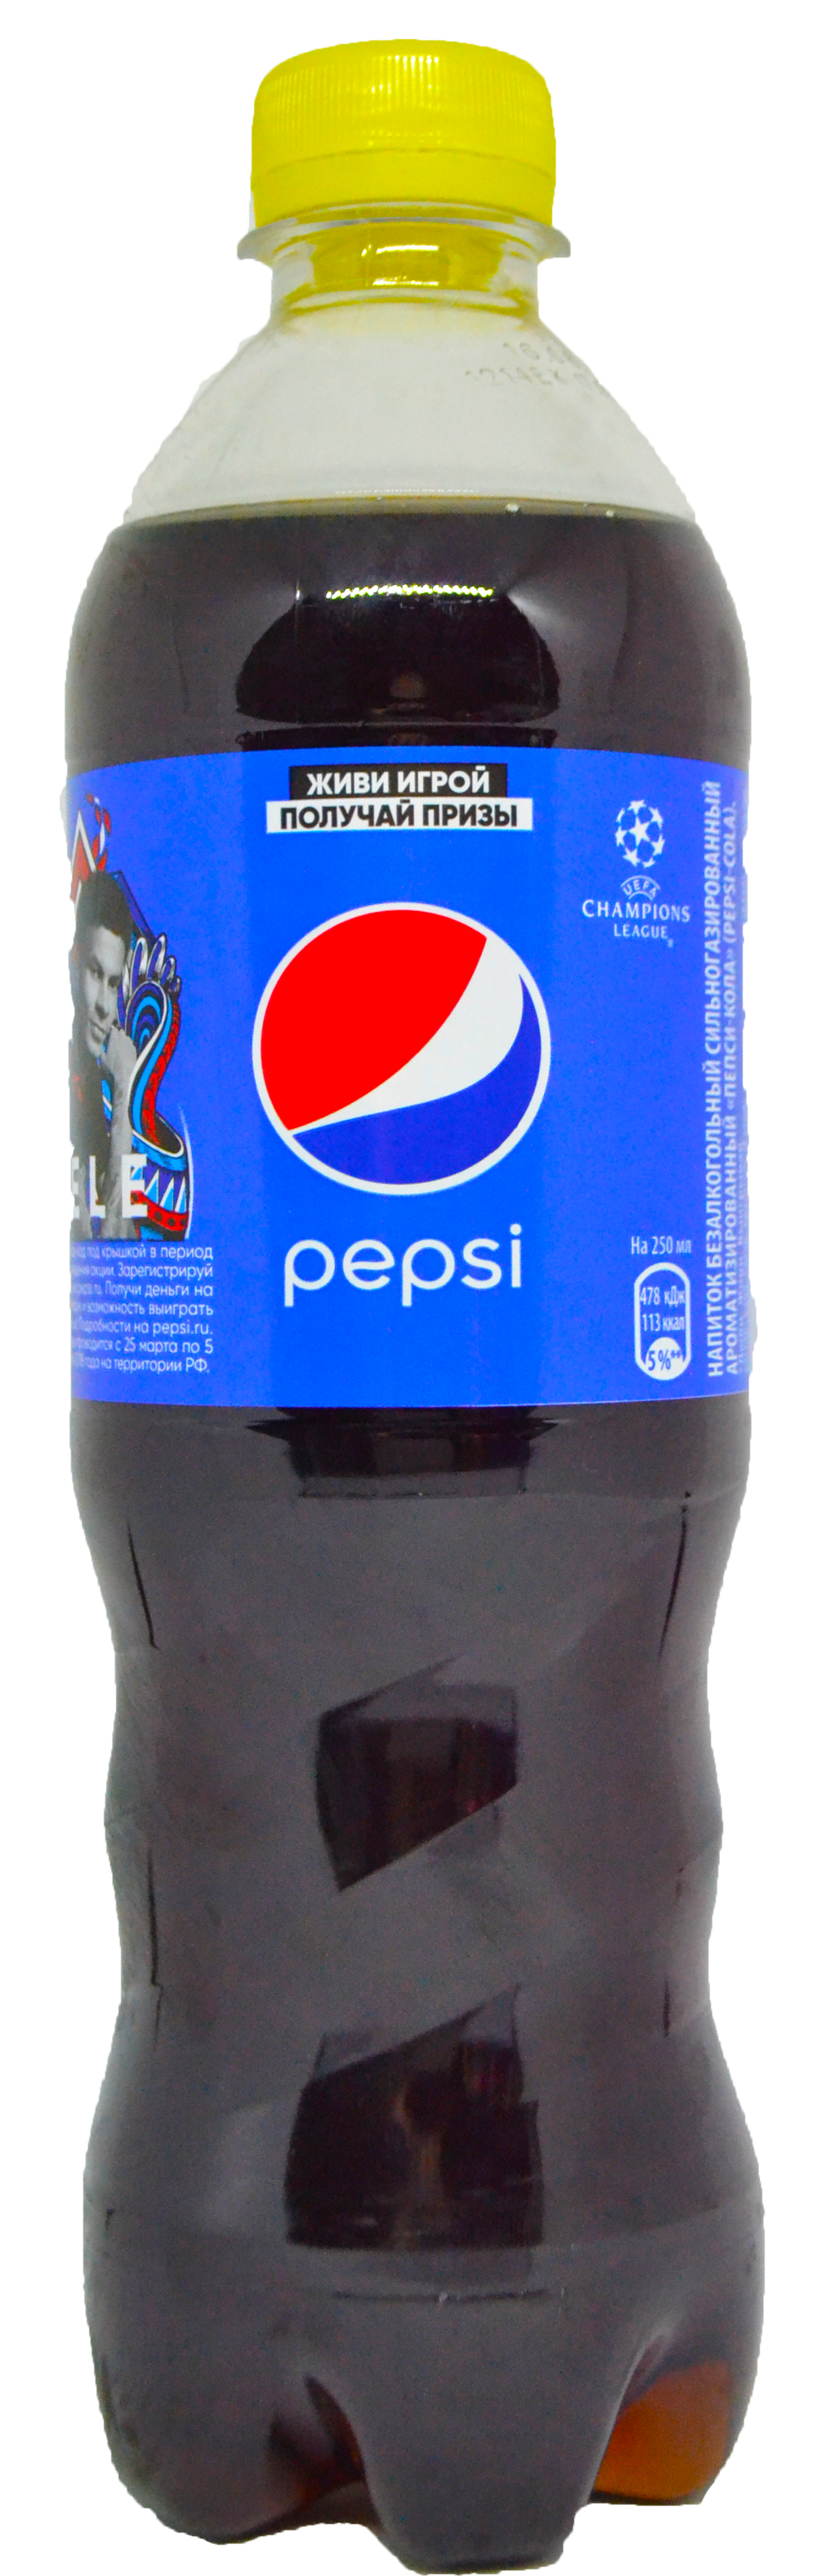 Pepsi-Cola (Пепси-Кола) 0,6 пэт от компании Нортэна